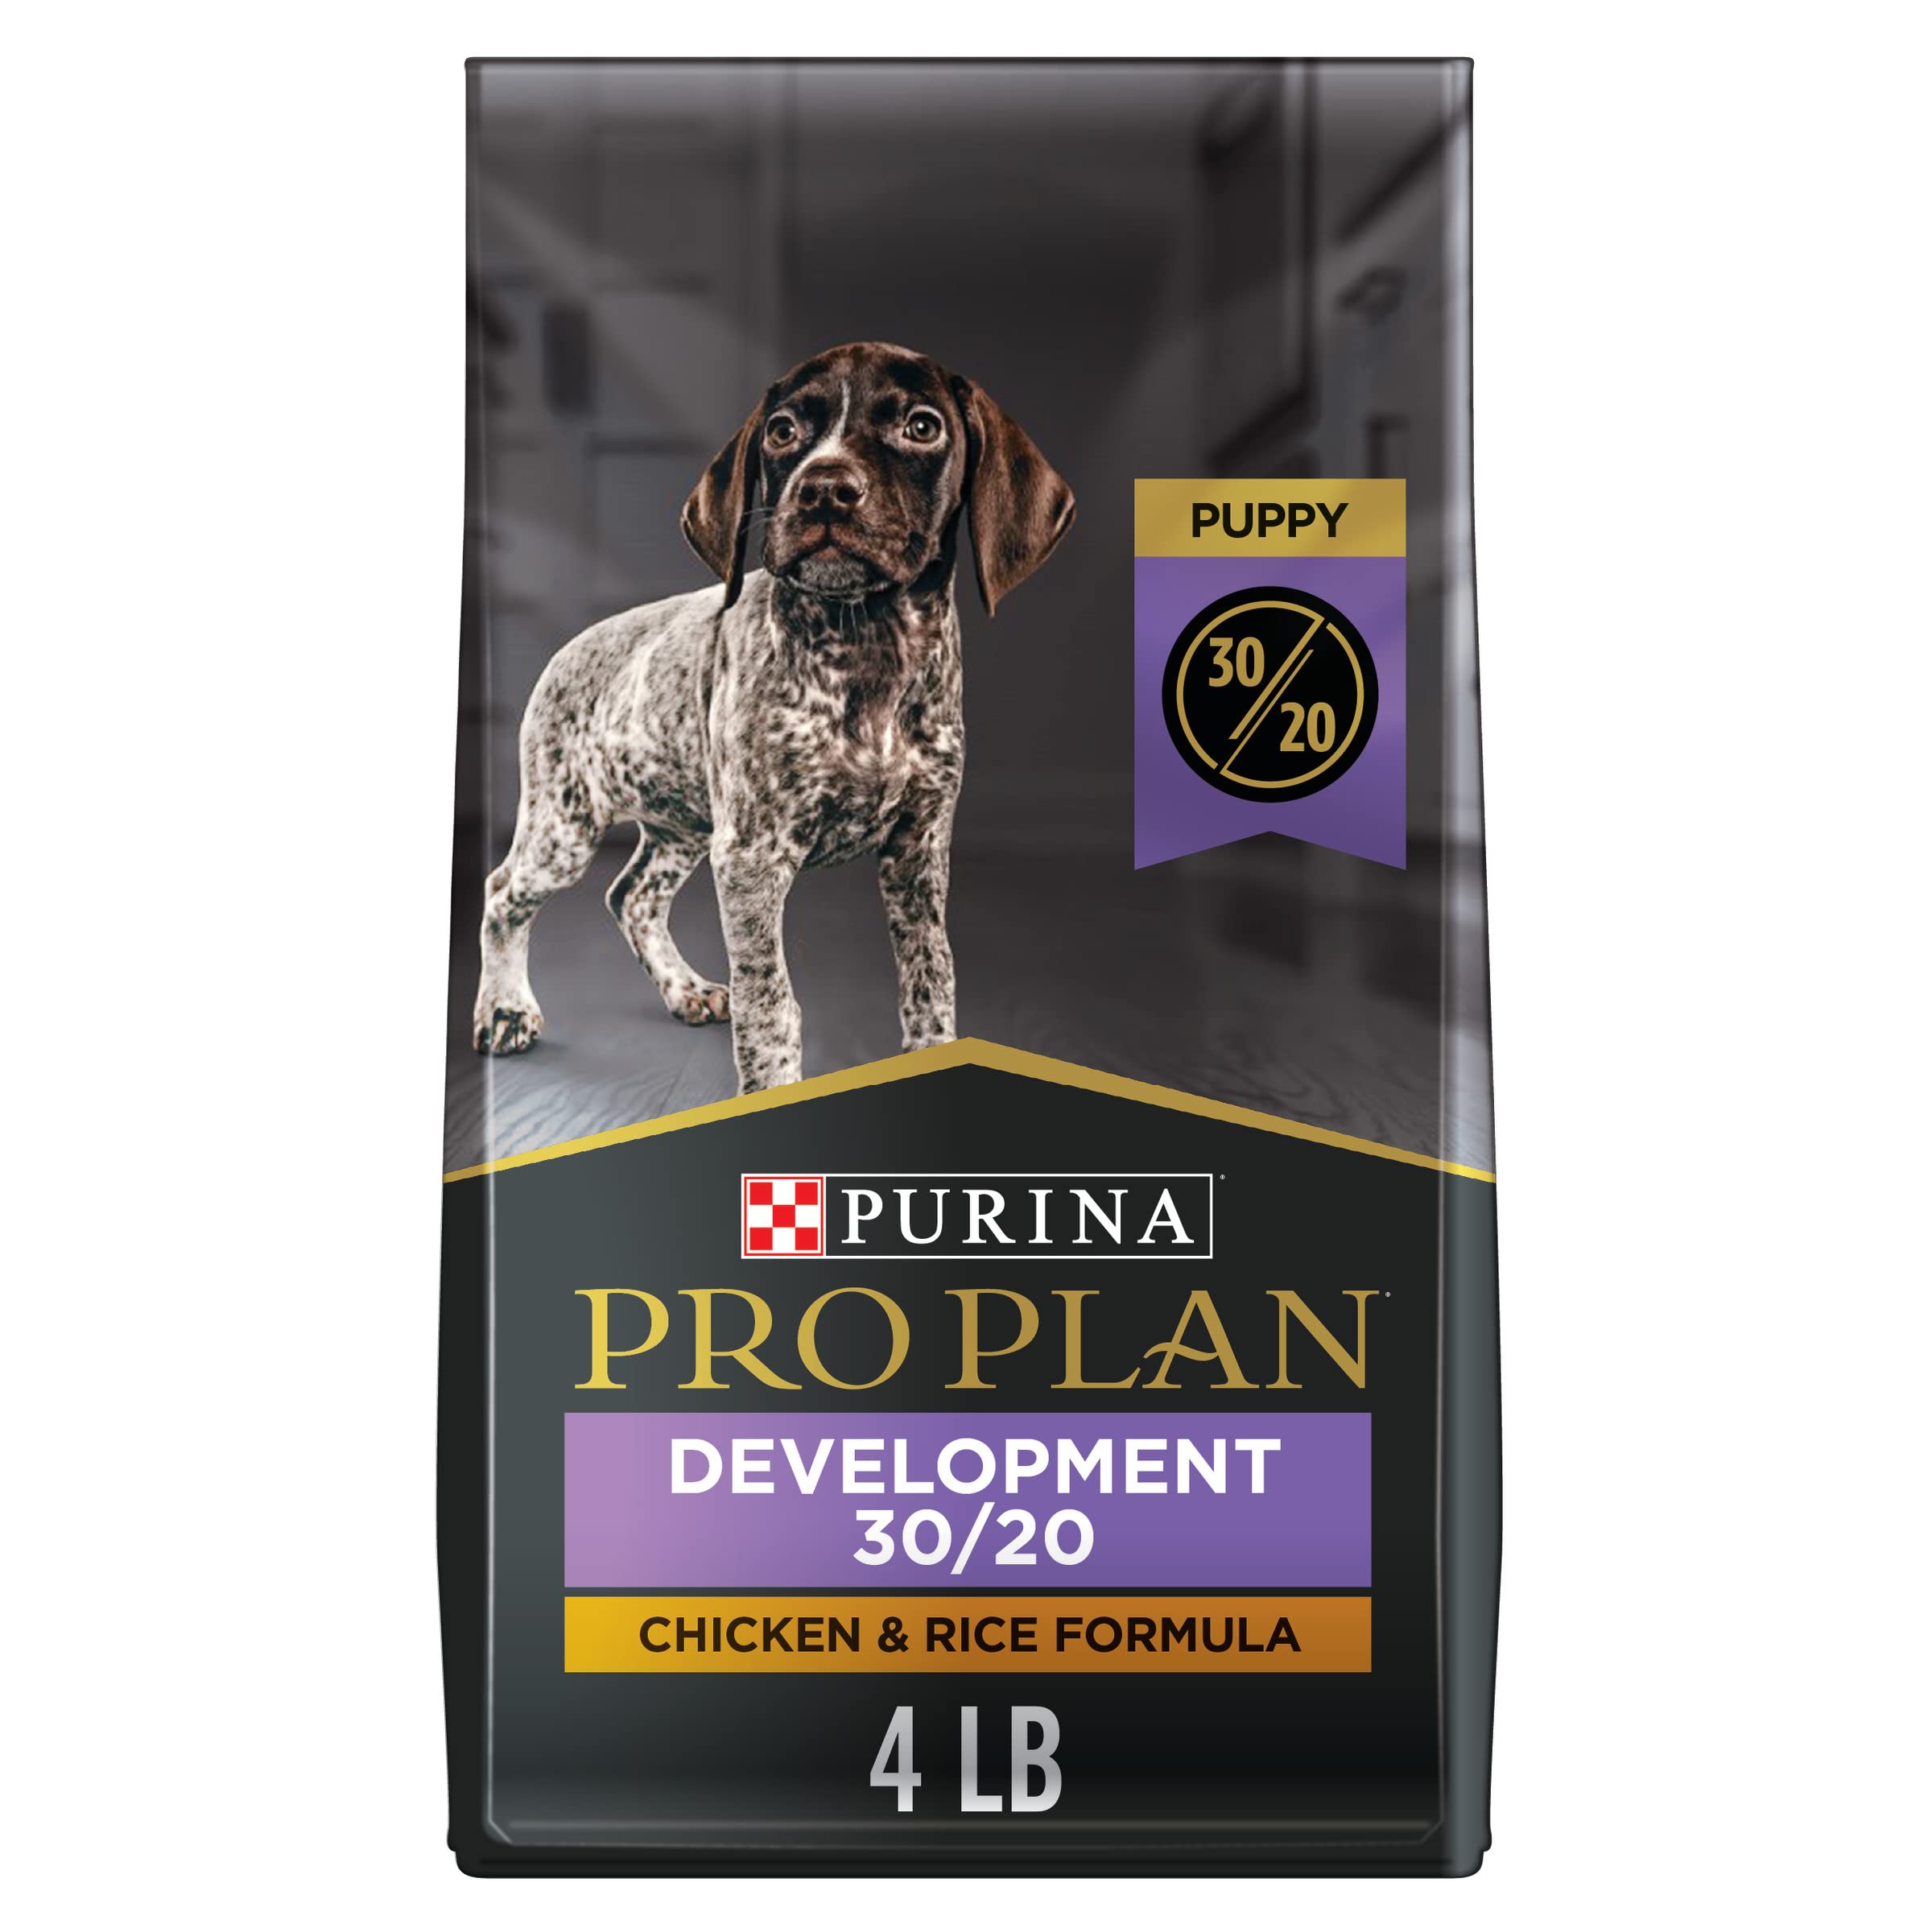 Purina Pro Plan 새로운 강아지 개발 - 고단백 건조 사료 - 닭고기와 쌀